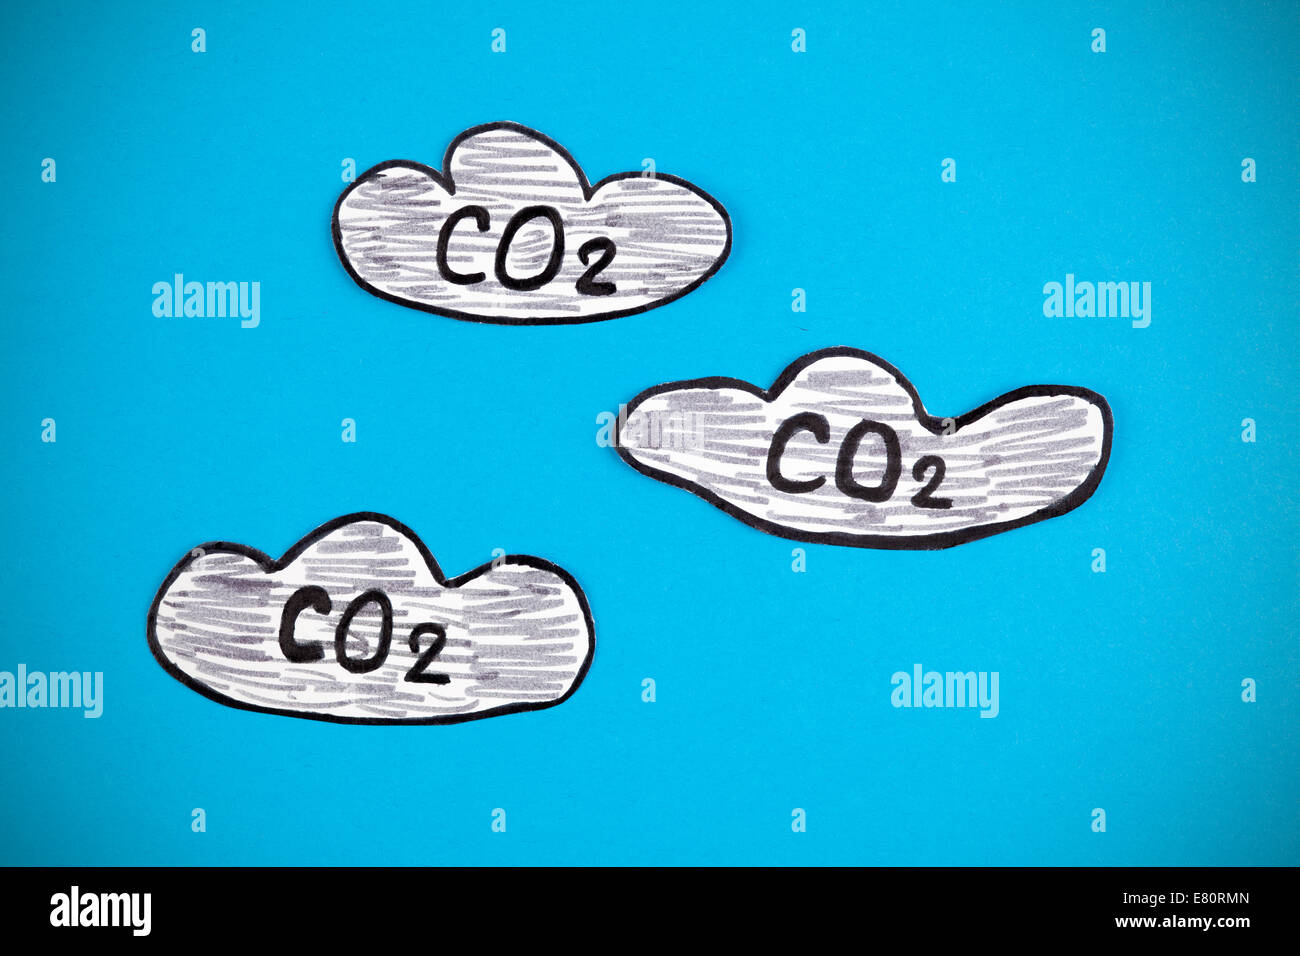 Il biossido di carbonio nuvole (CO2). Immagine è stata disegnata a mano e il taglio della carta-fuori da me. Foto Stock